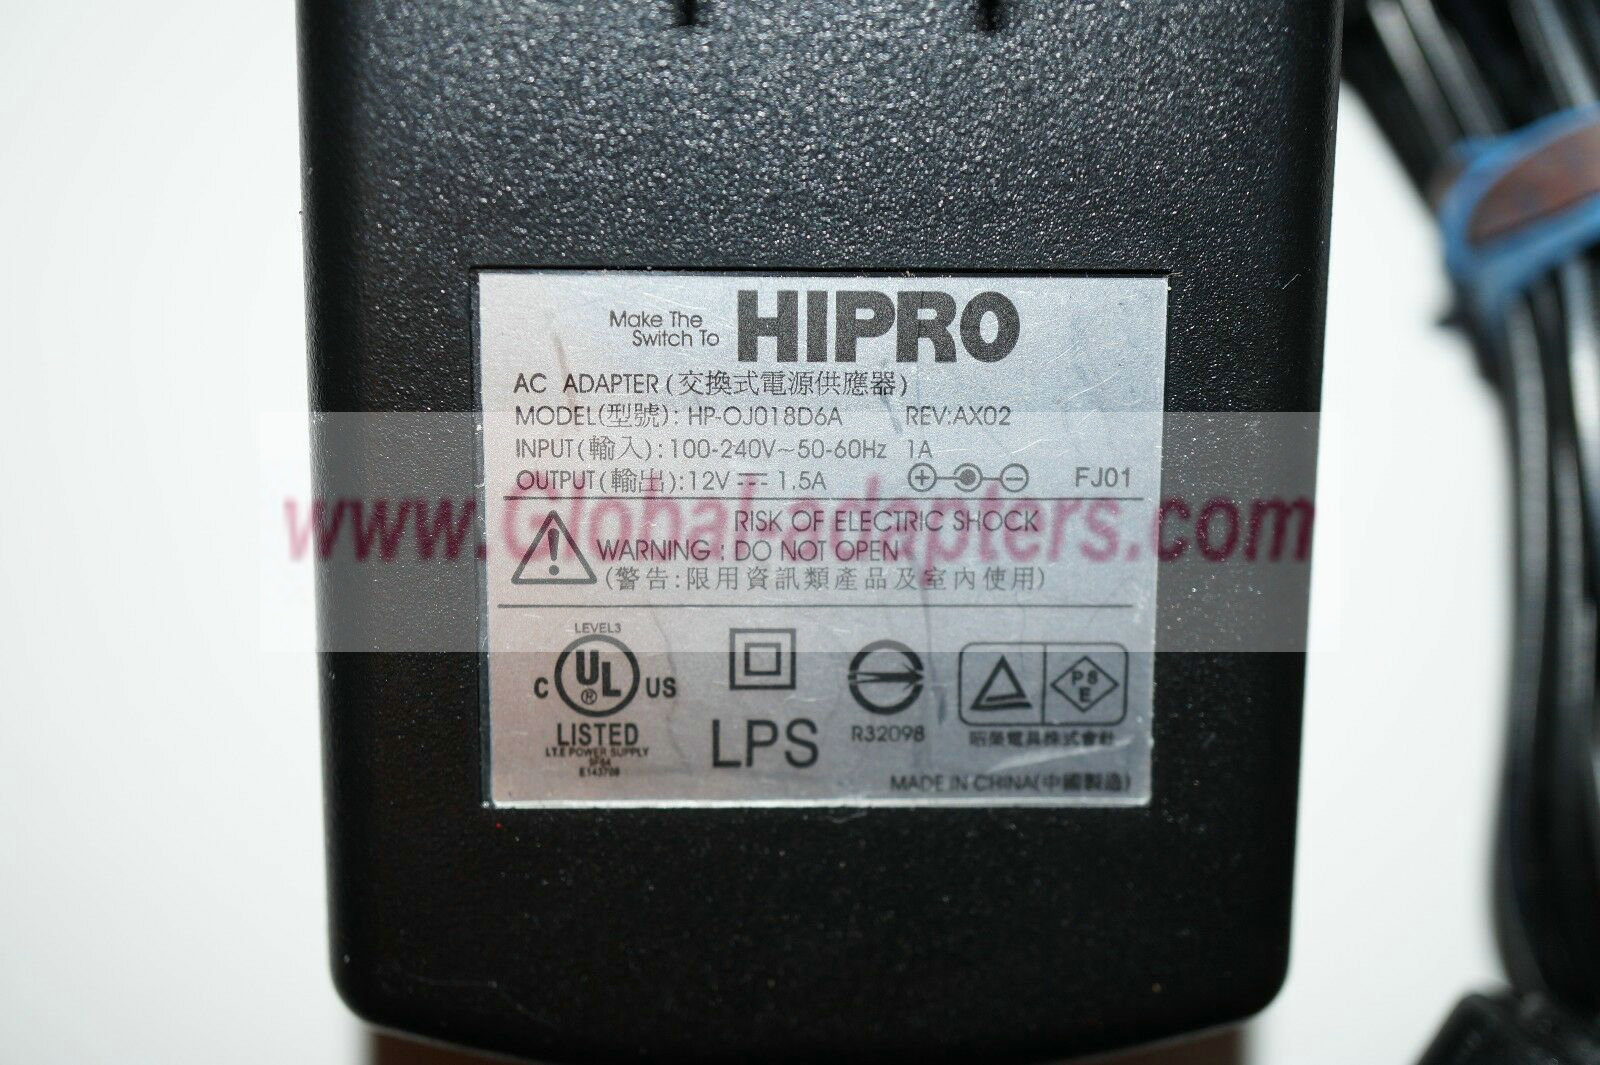 NEW 12V 1.5A Hipro HP-OJ018D6A Rev: AX02 AC Adapter